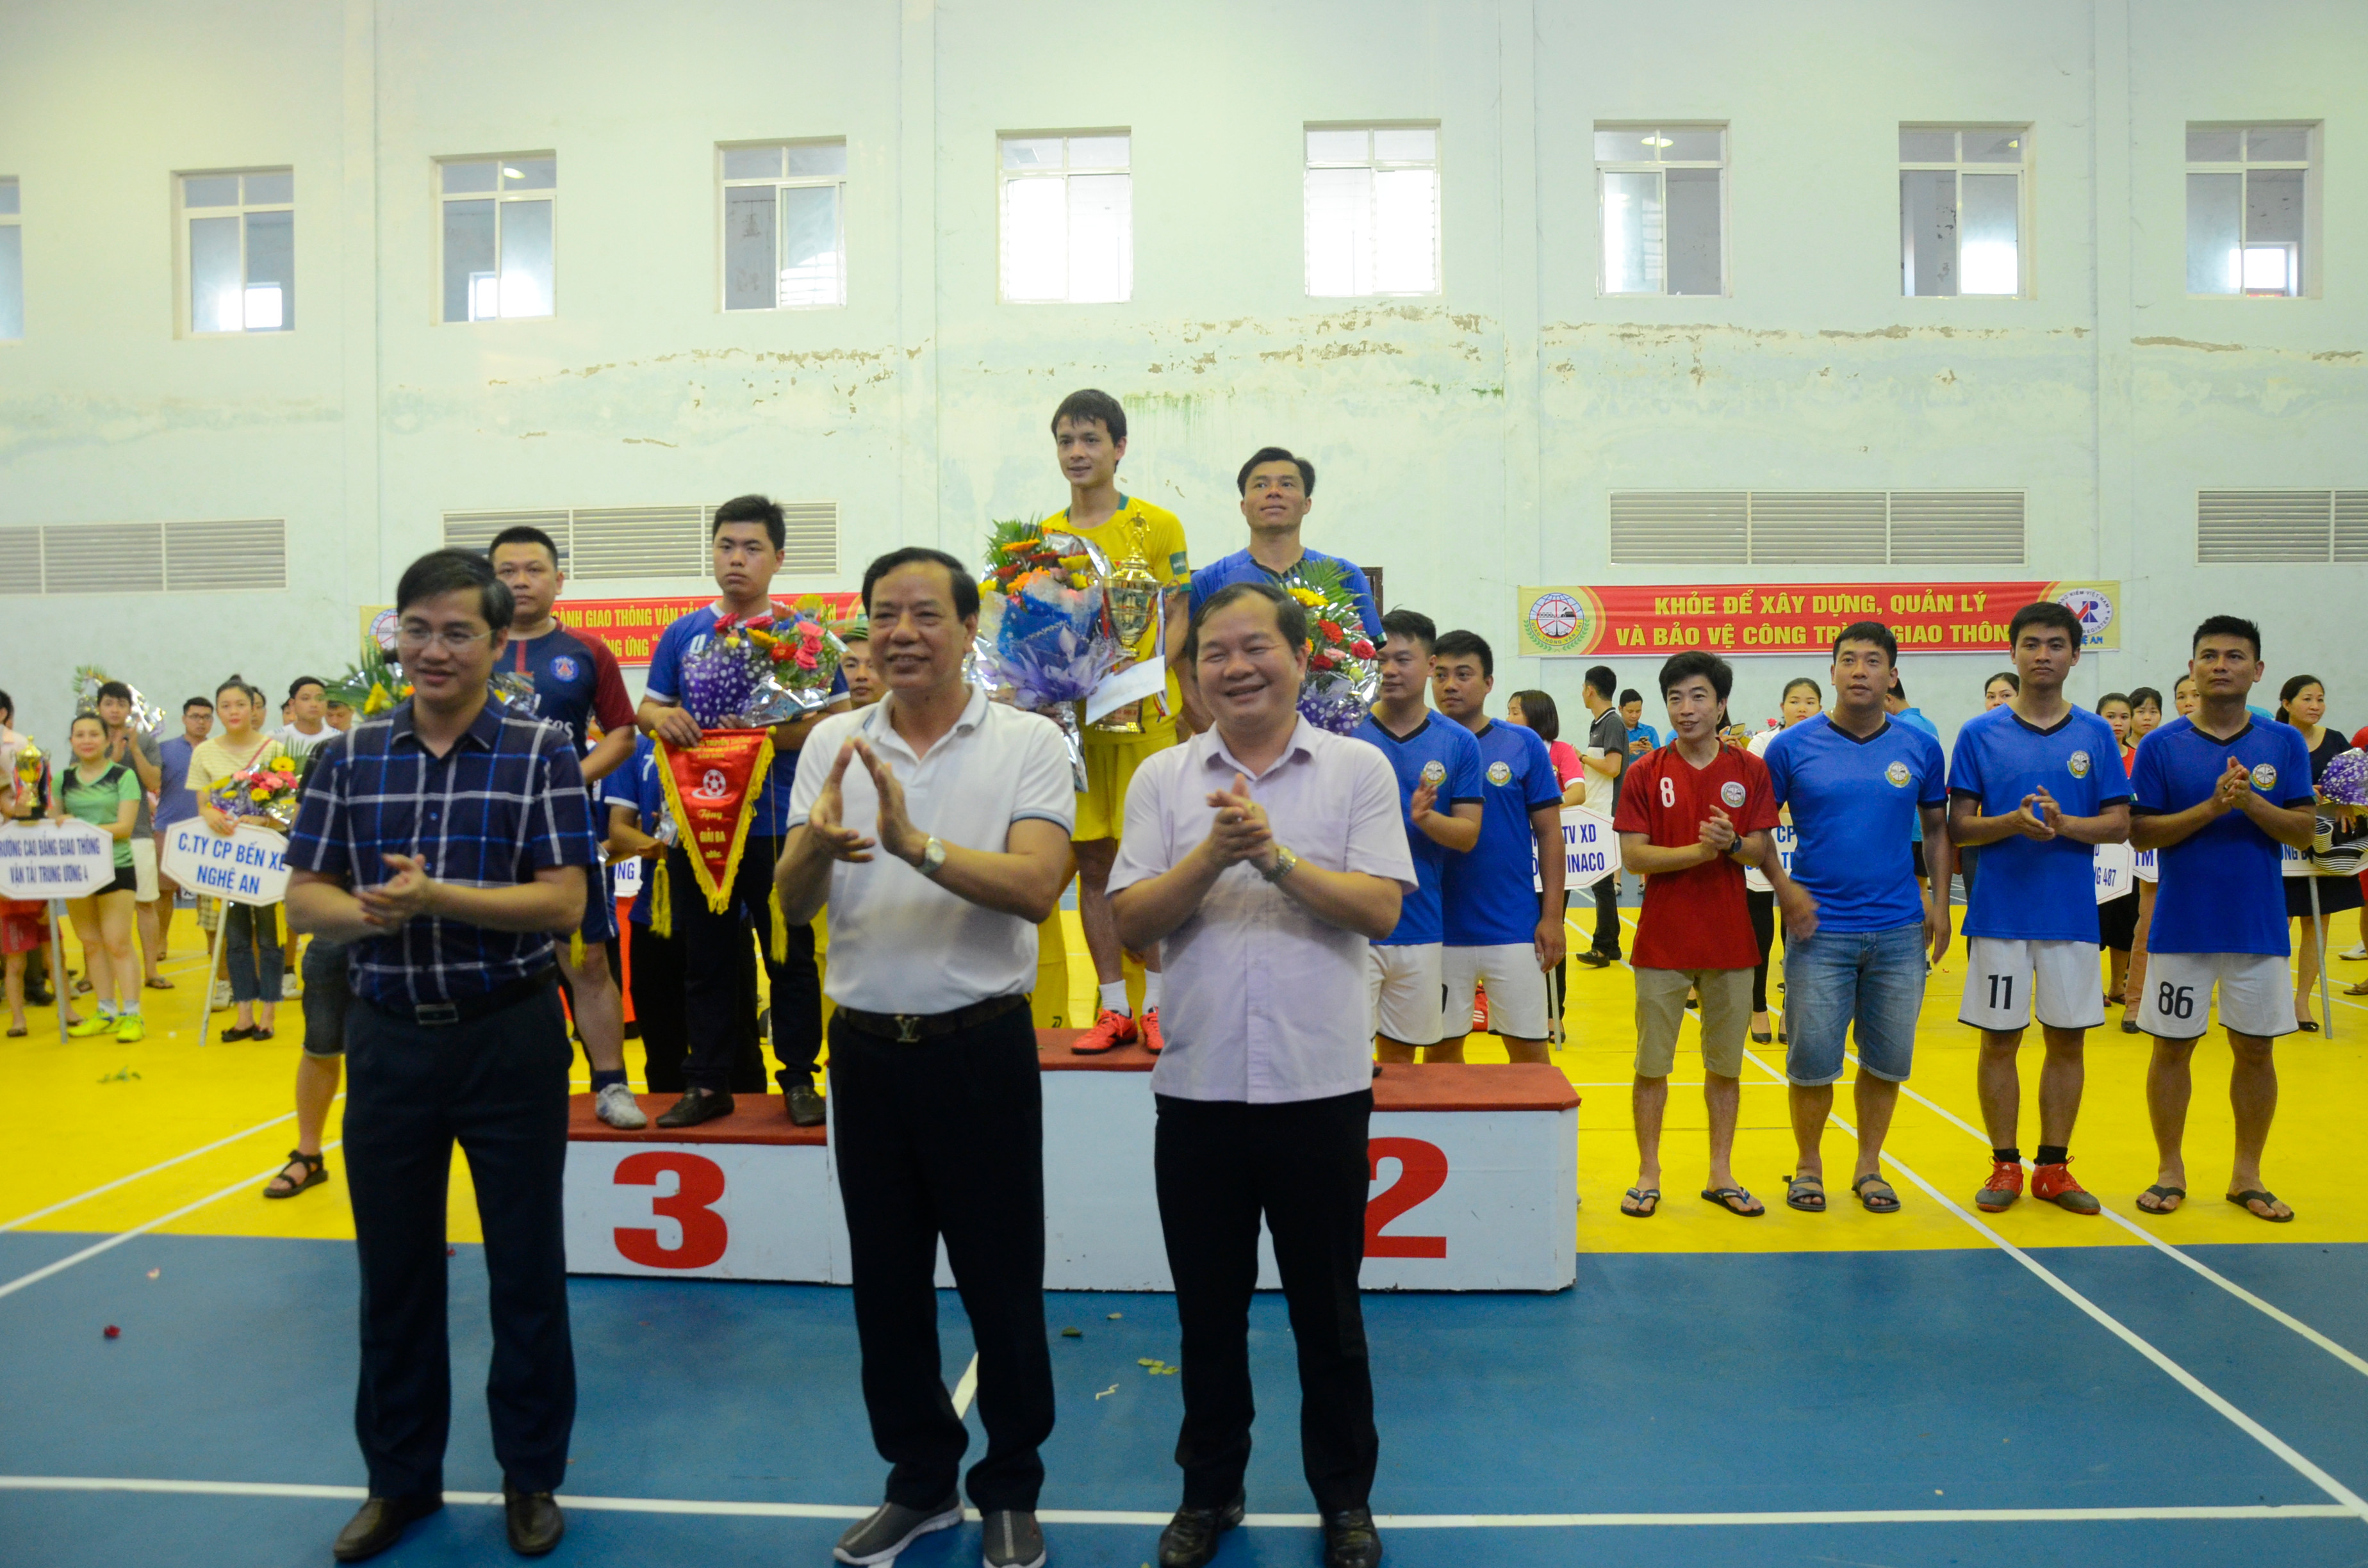 Lãnh đạo Sở GTVT trao giải cho bộ môn bóng đá cho các đội đạt giải cao. Ảnh Thanh Lê